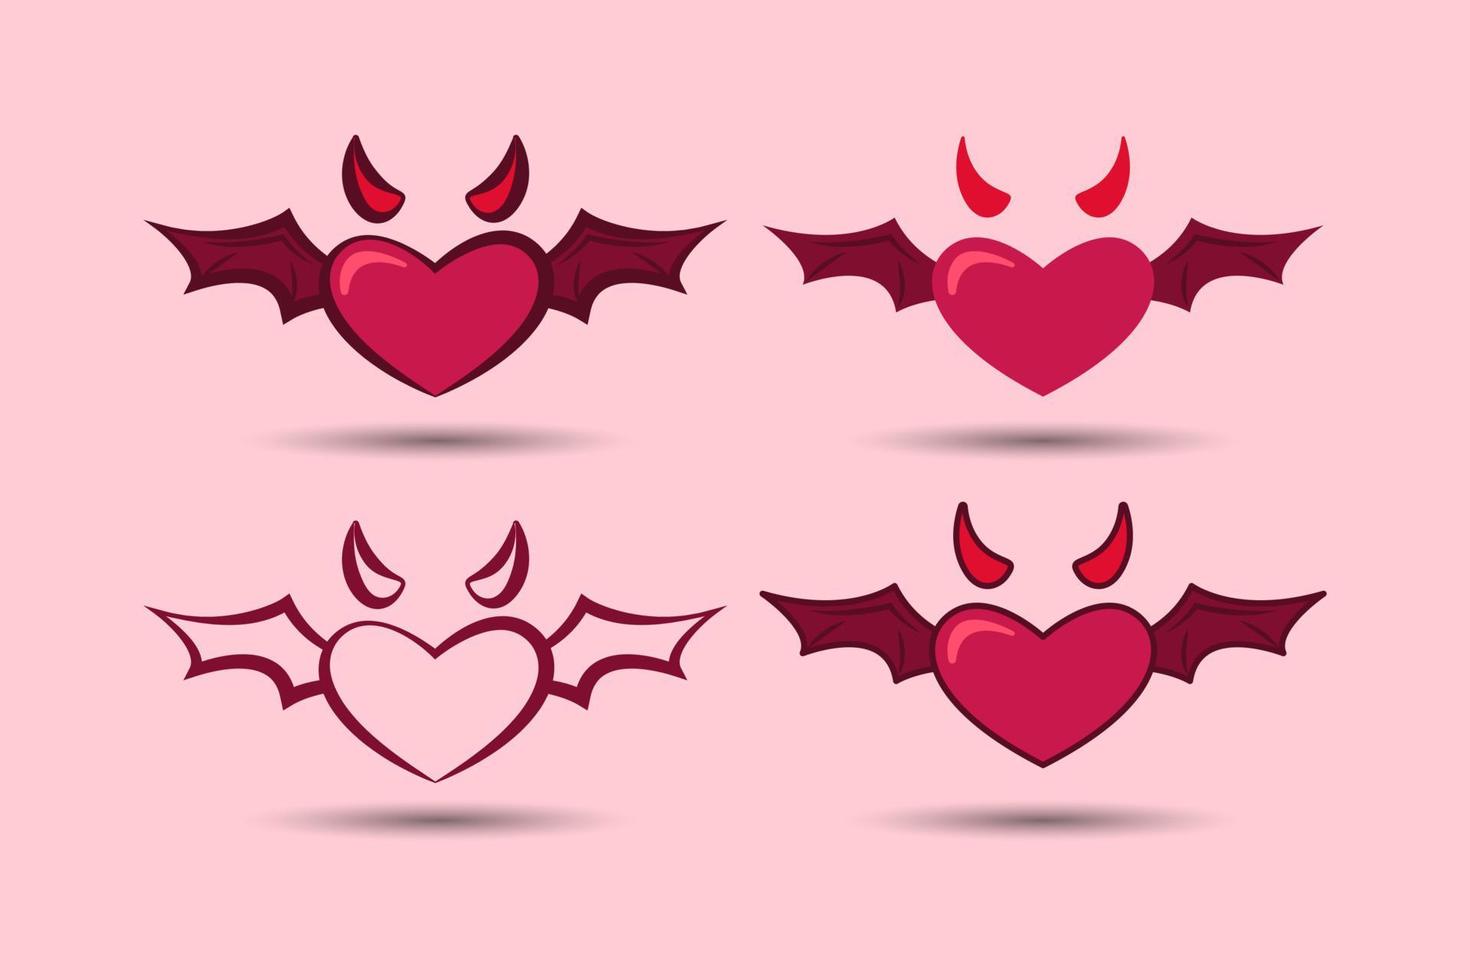 elemento del día de san valentín. Cupido amor diablo con alas. ilustración vectorial vector